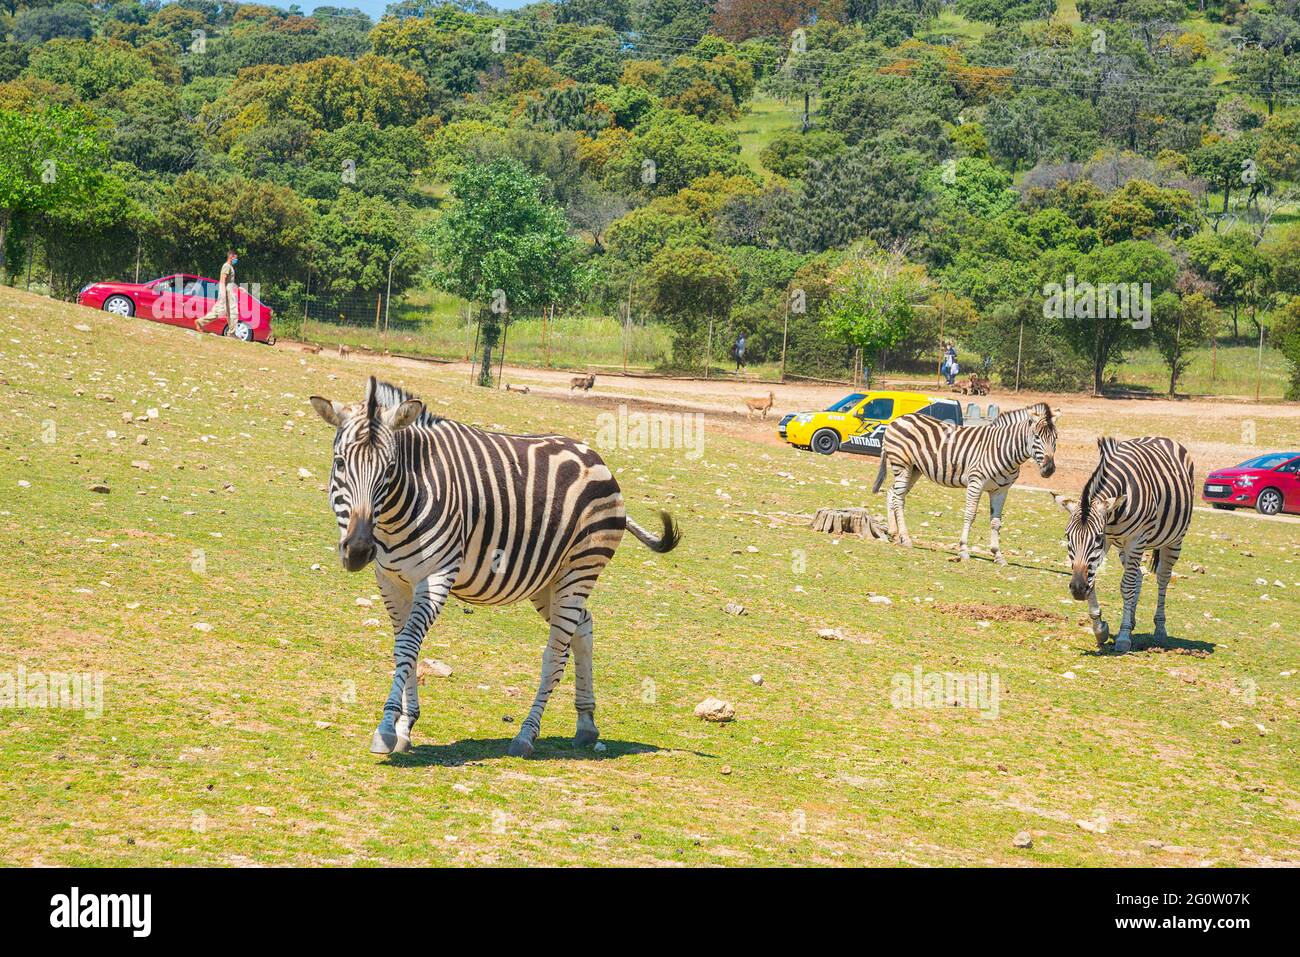 Zebras in a meadow. Safari Madrid, Aldea del Fresno, Madrid province, Spain. Stock Photo